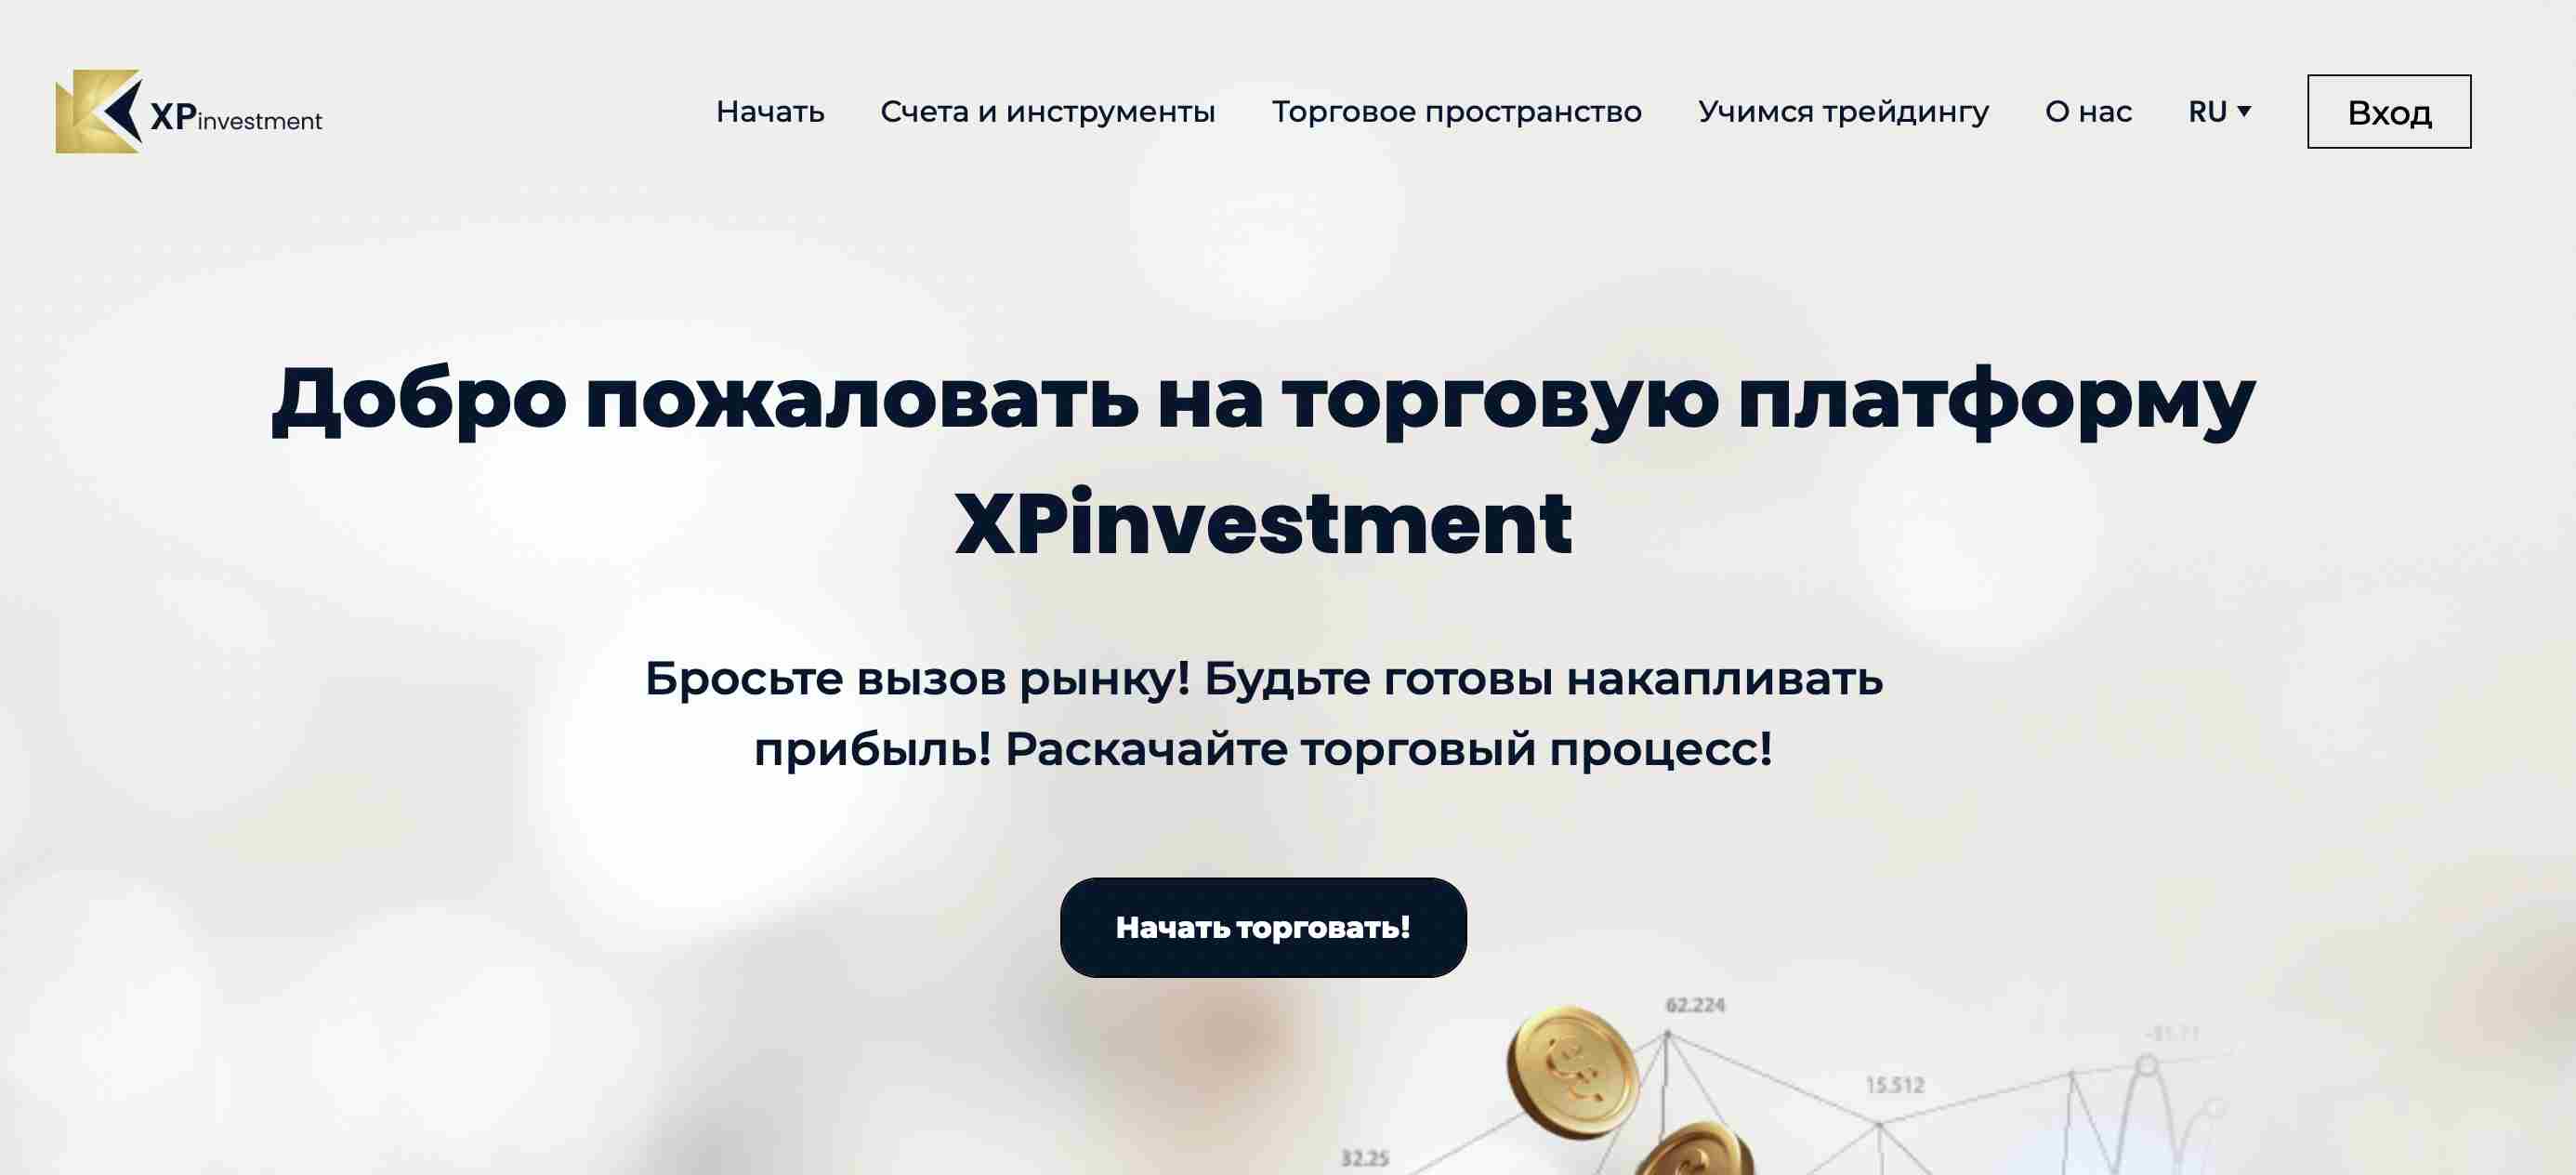 Xp Investment — очередная ловушка для доверчивых трейдеров